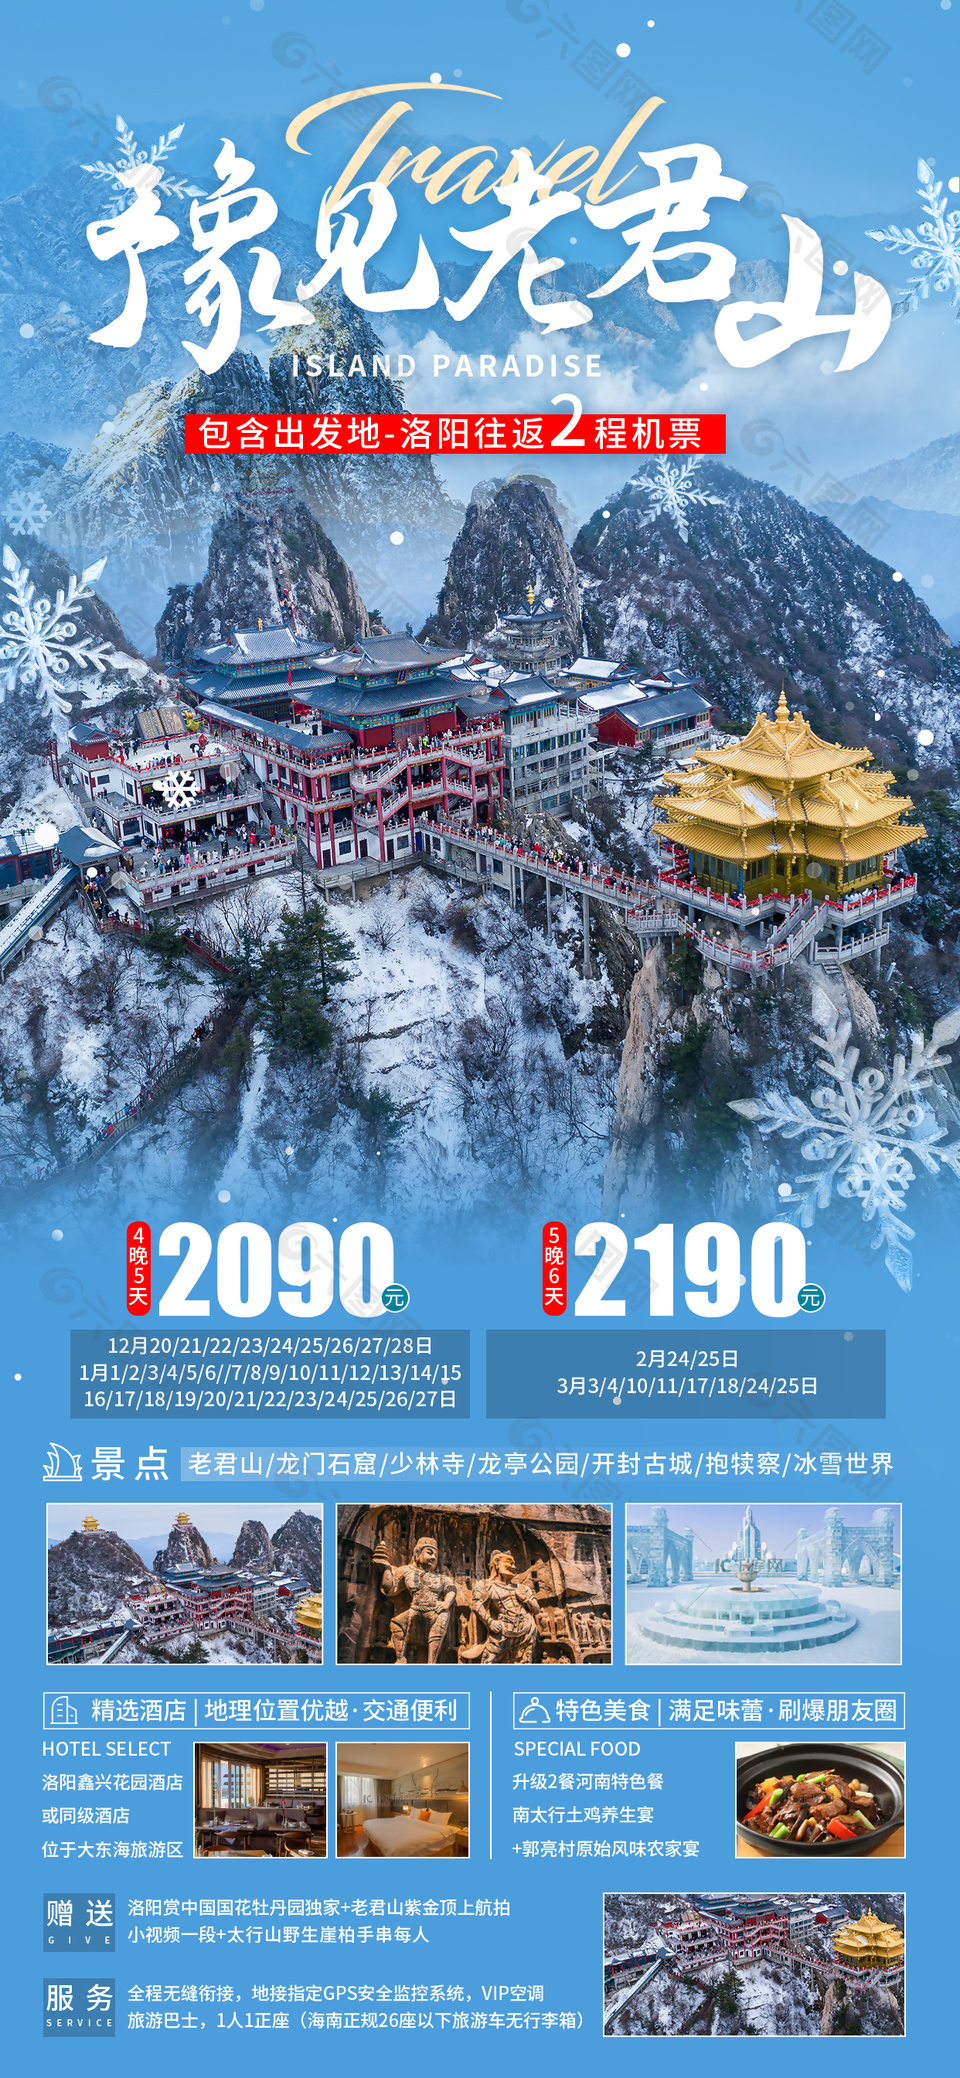 老君山雪景摄影配图冬季旅游海报设计